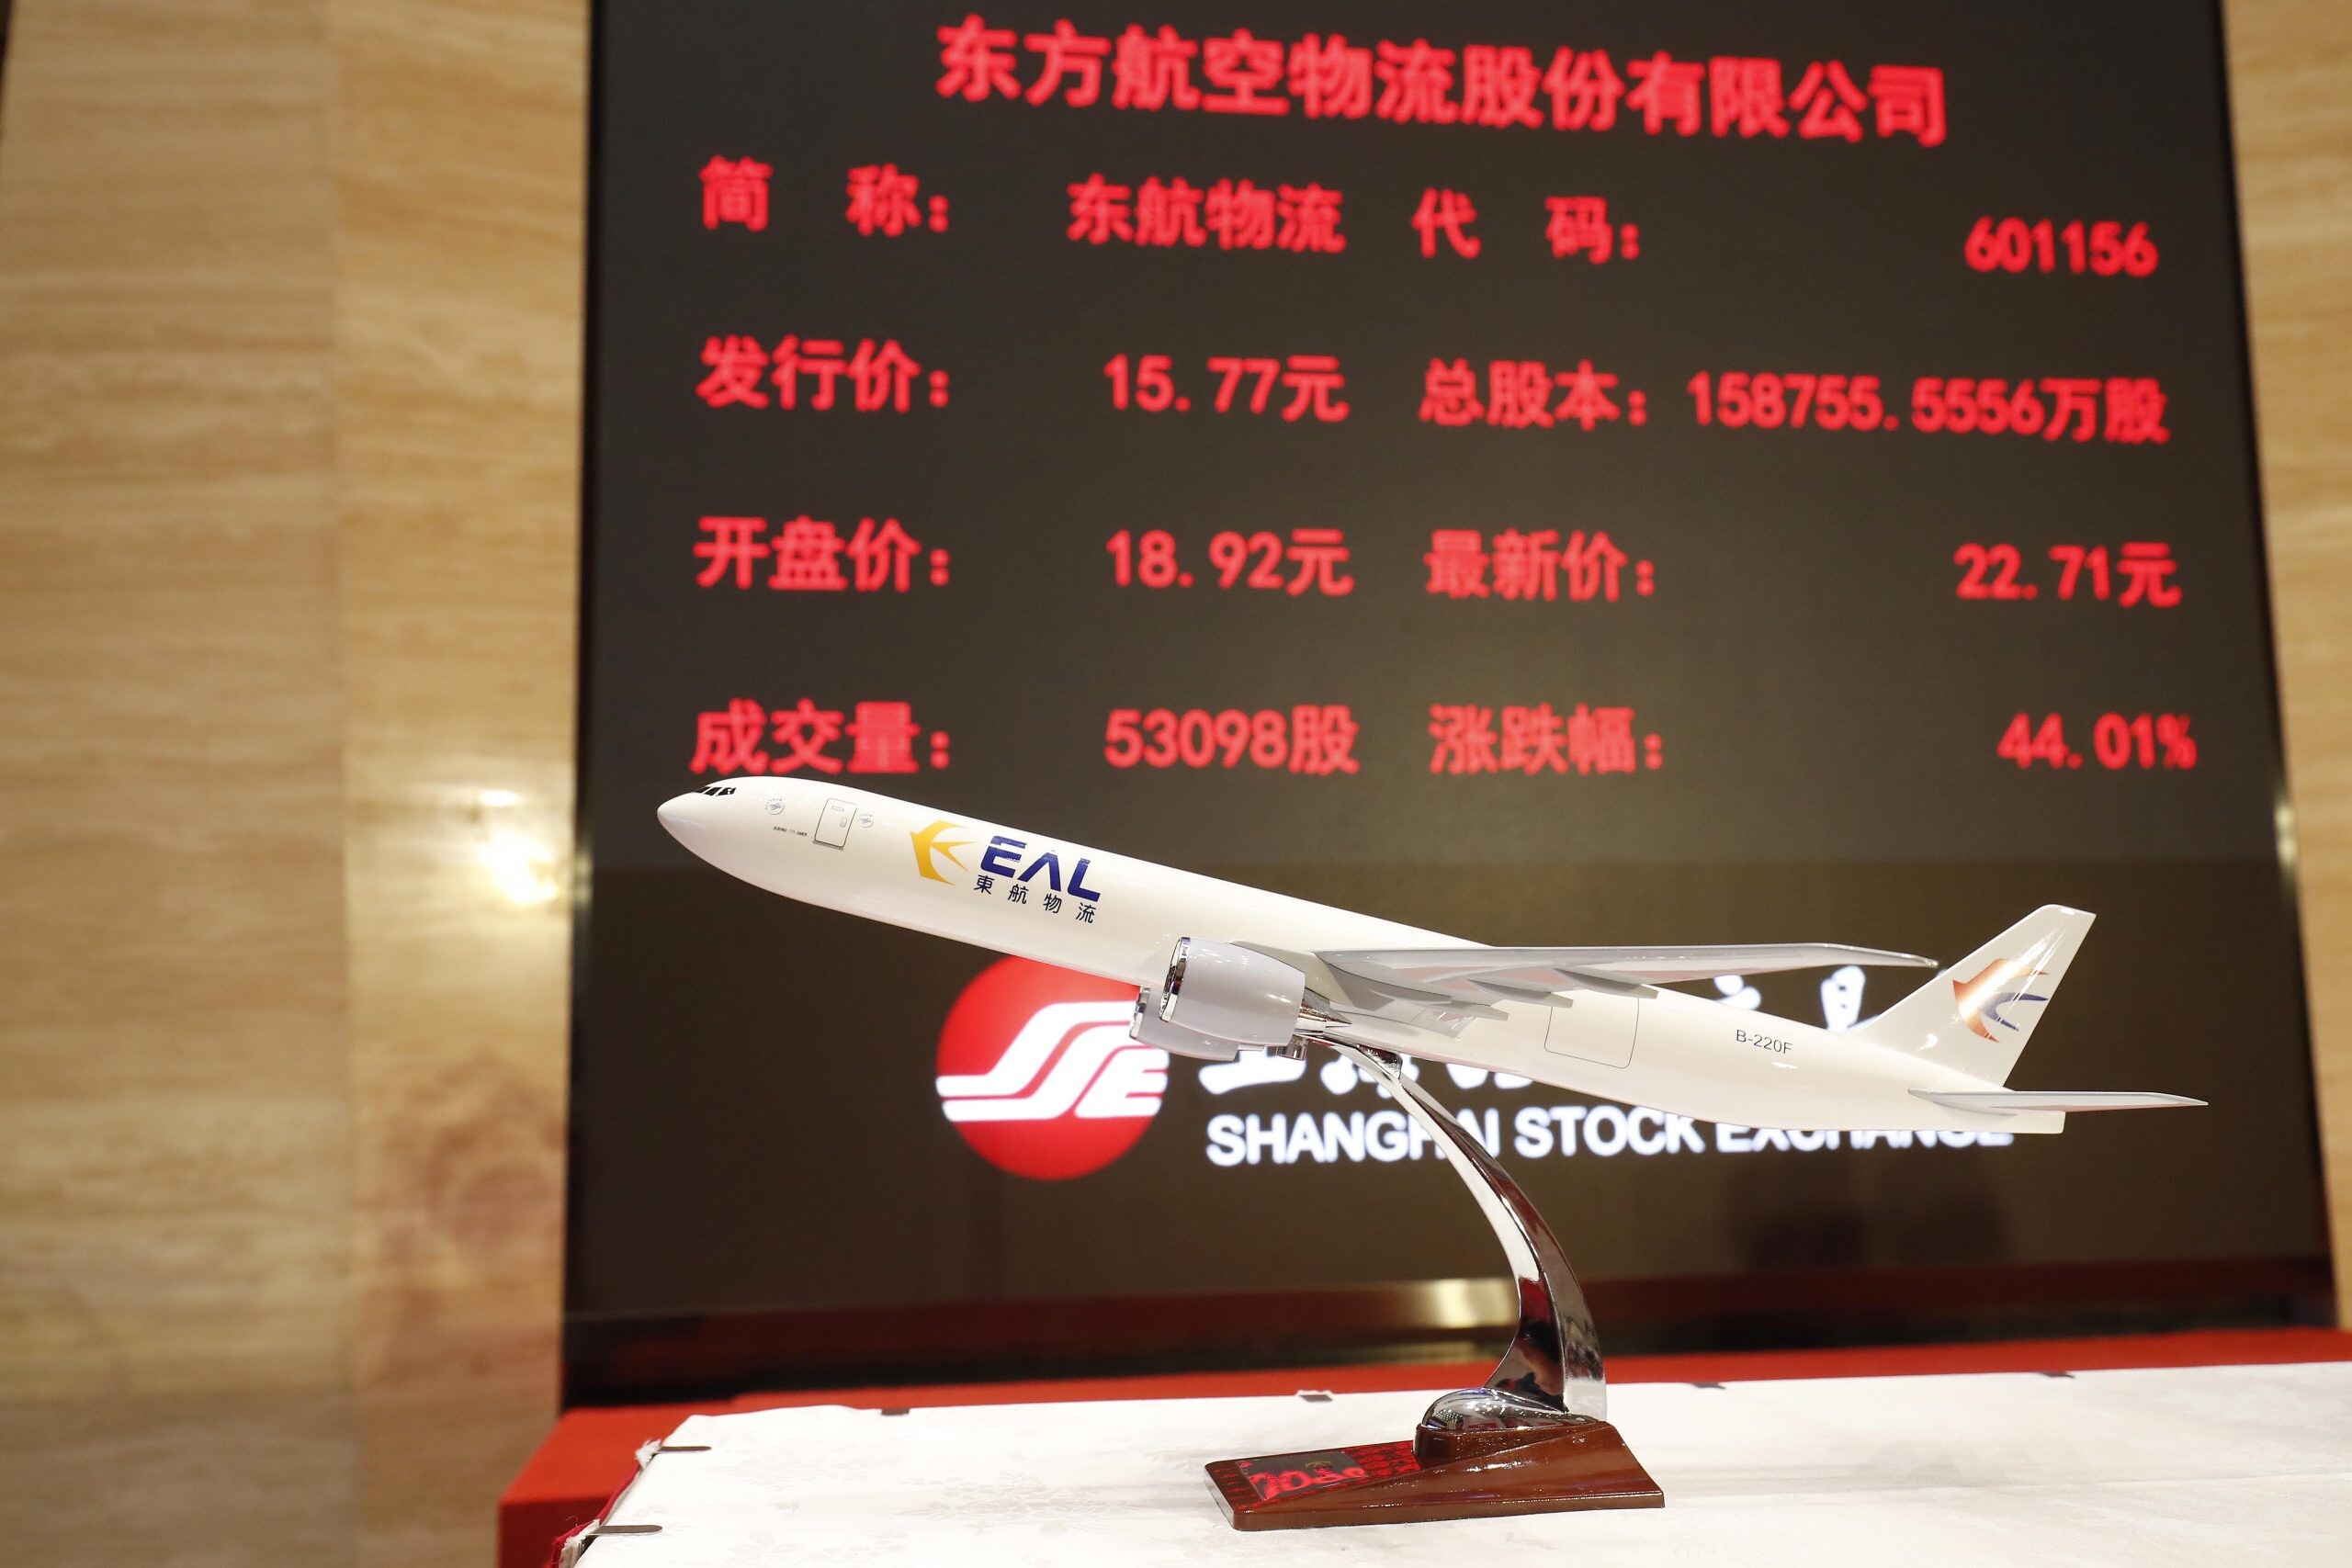 Eastern Air Logistics (EAL) บริษัทในเครือของ China Eastern Airlines Group ประกาศเข้าสู่ตลาดหลักทรัพย์อย่างเป็นทางการ